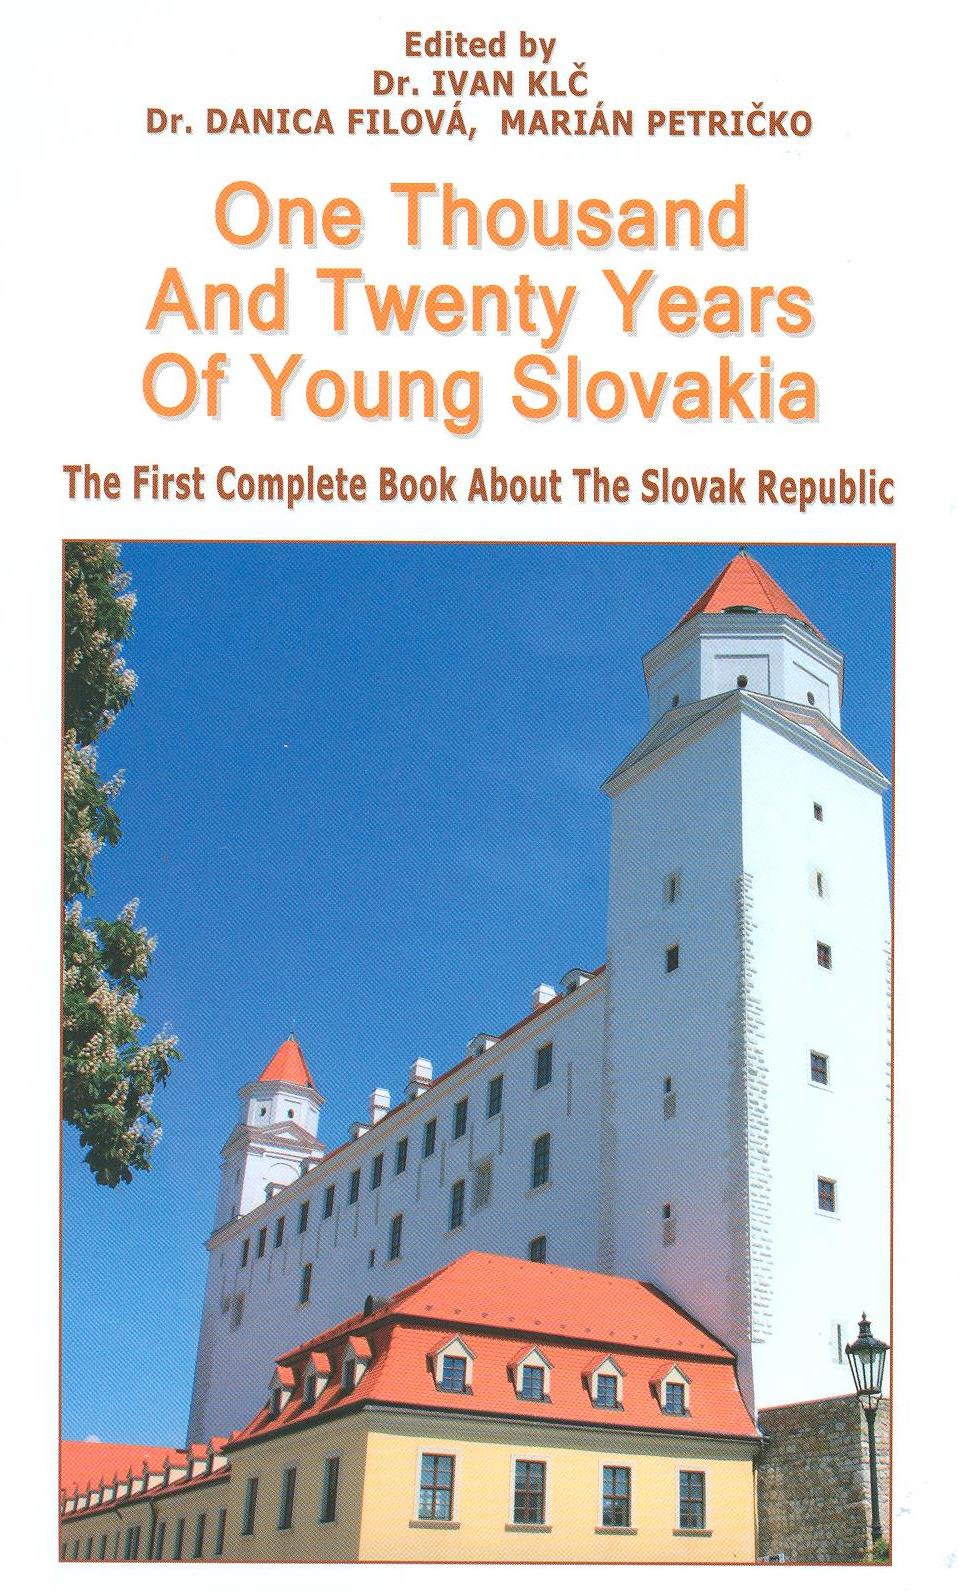 Kniha o Slovensku